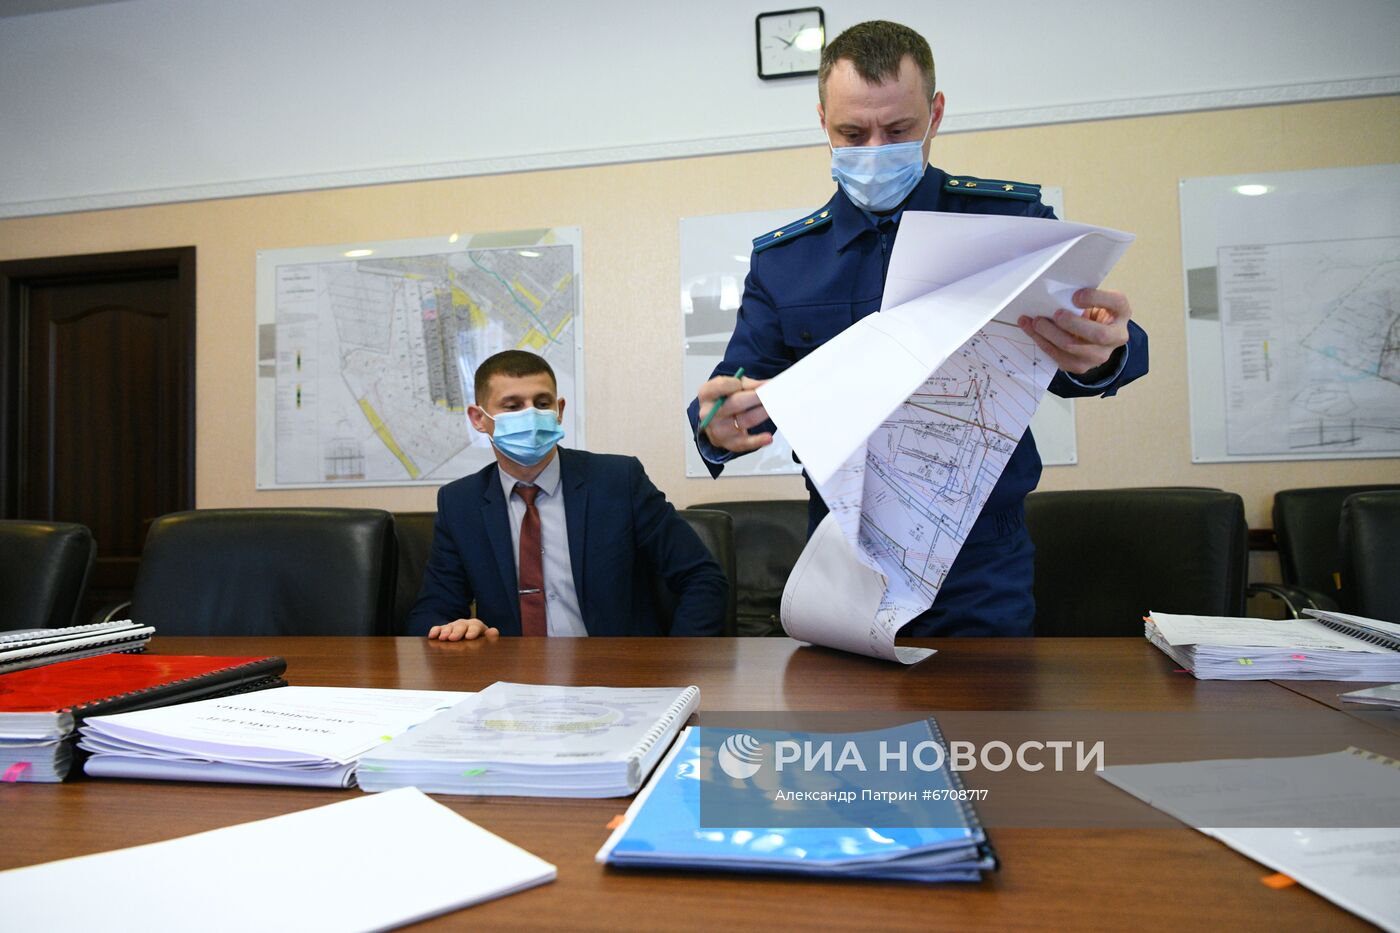 Прокурорская проверка шахты "Комсомолец" в Кузбассе